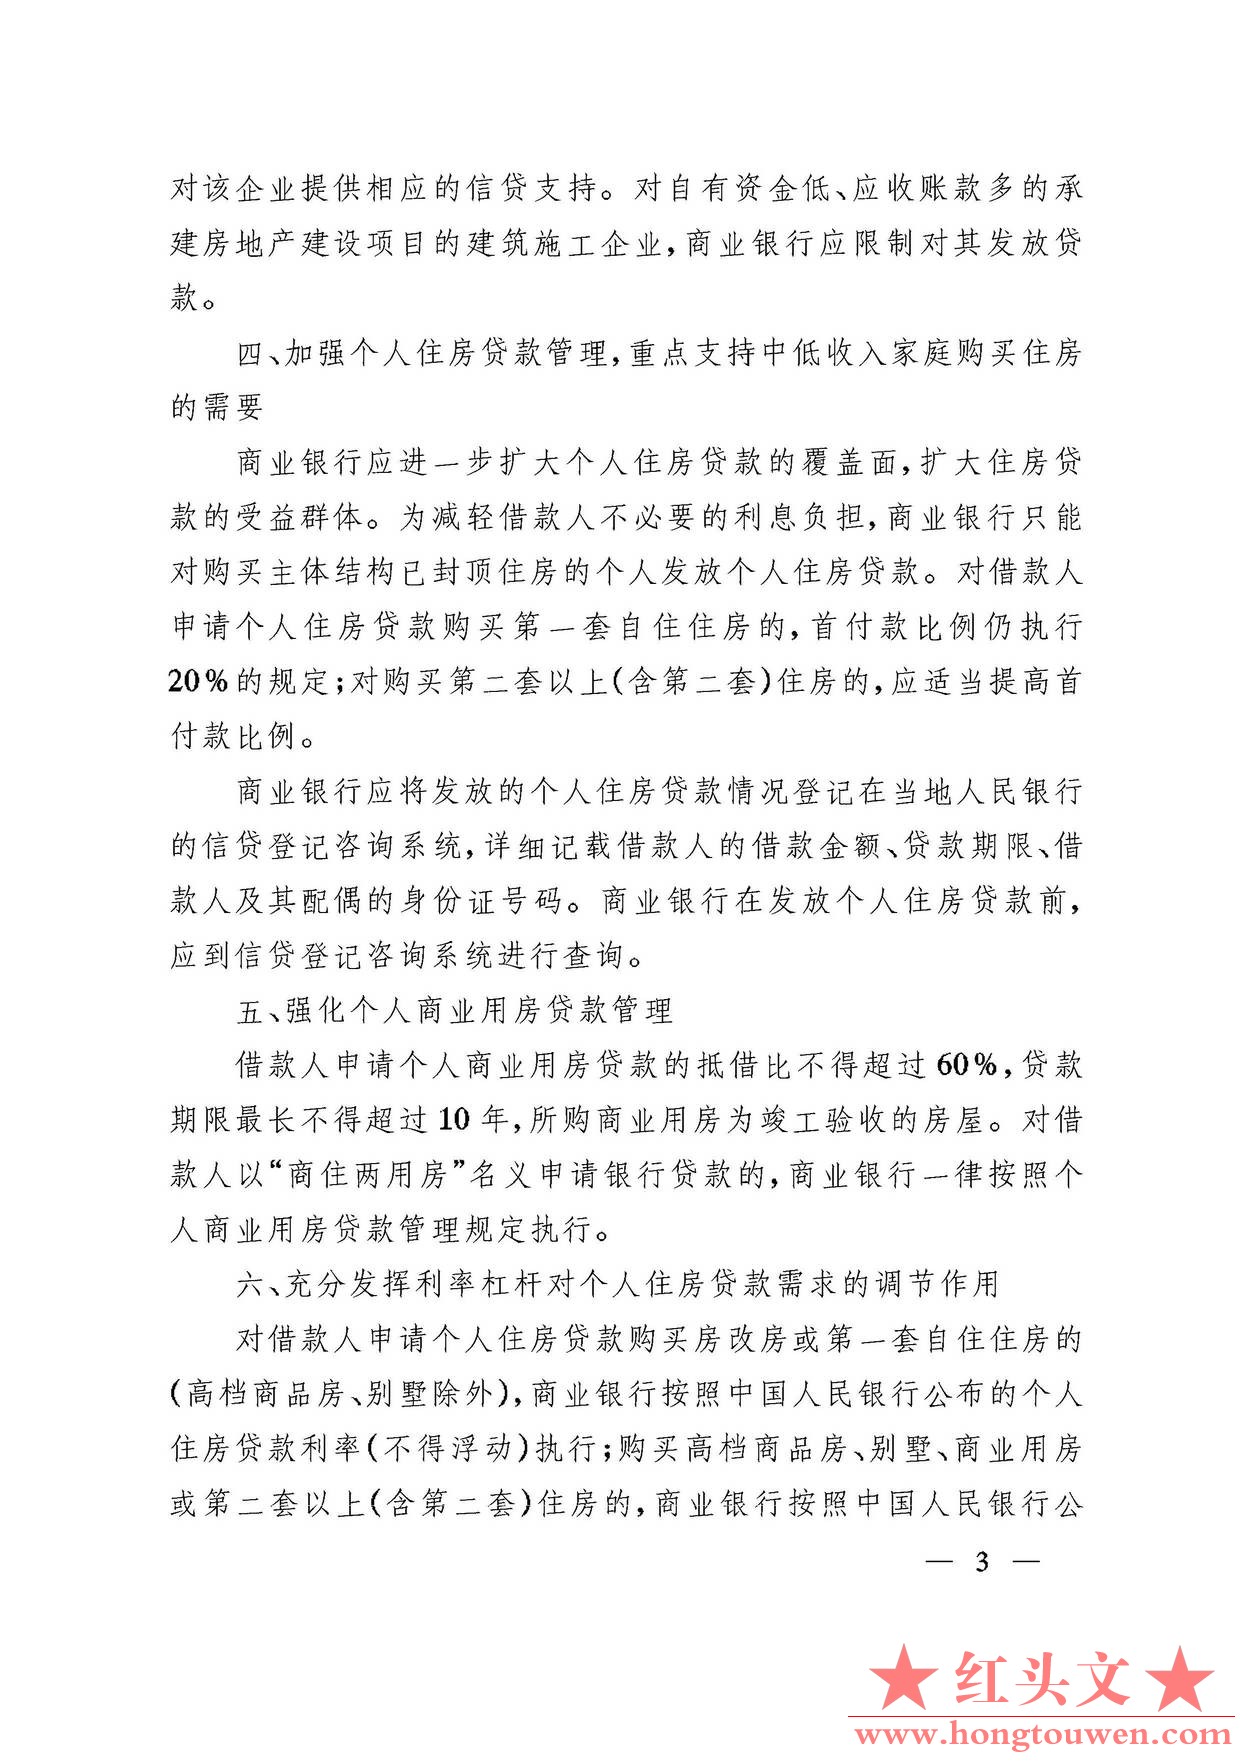 银发[2003]121号-中国人民银行关于进一步加强房地产信贷业务管理的通知_页面_3.jpg.jpg